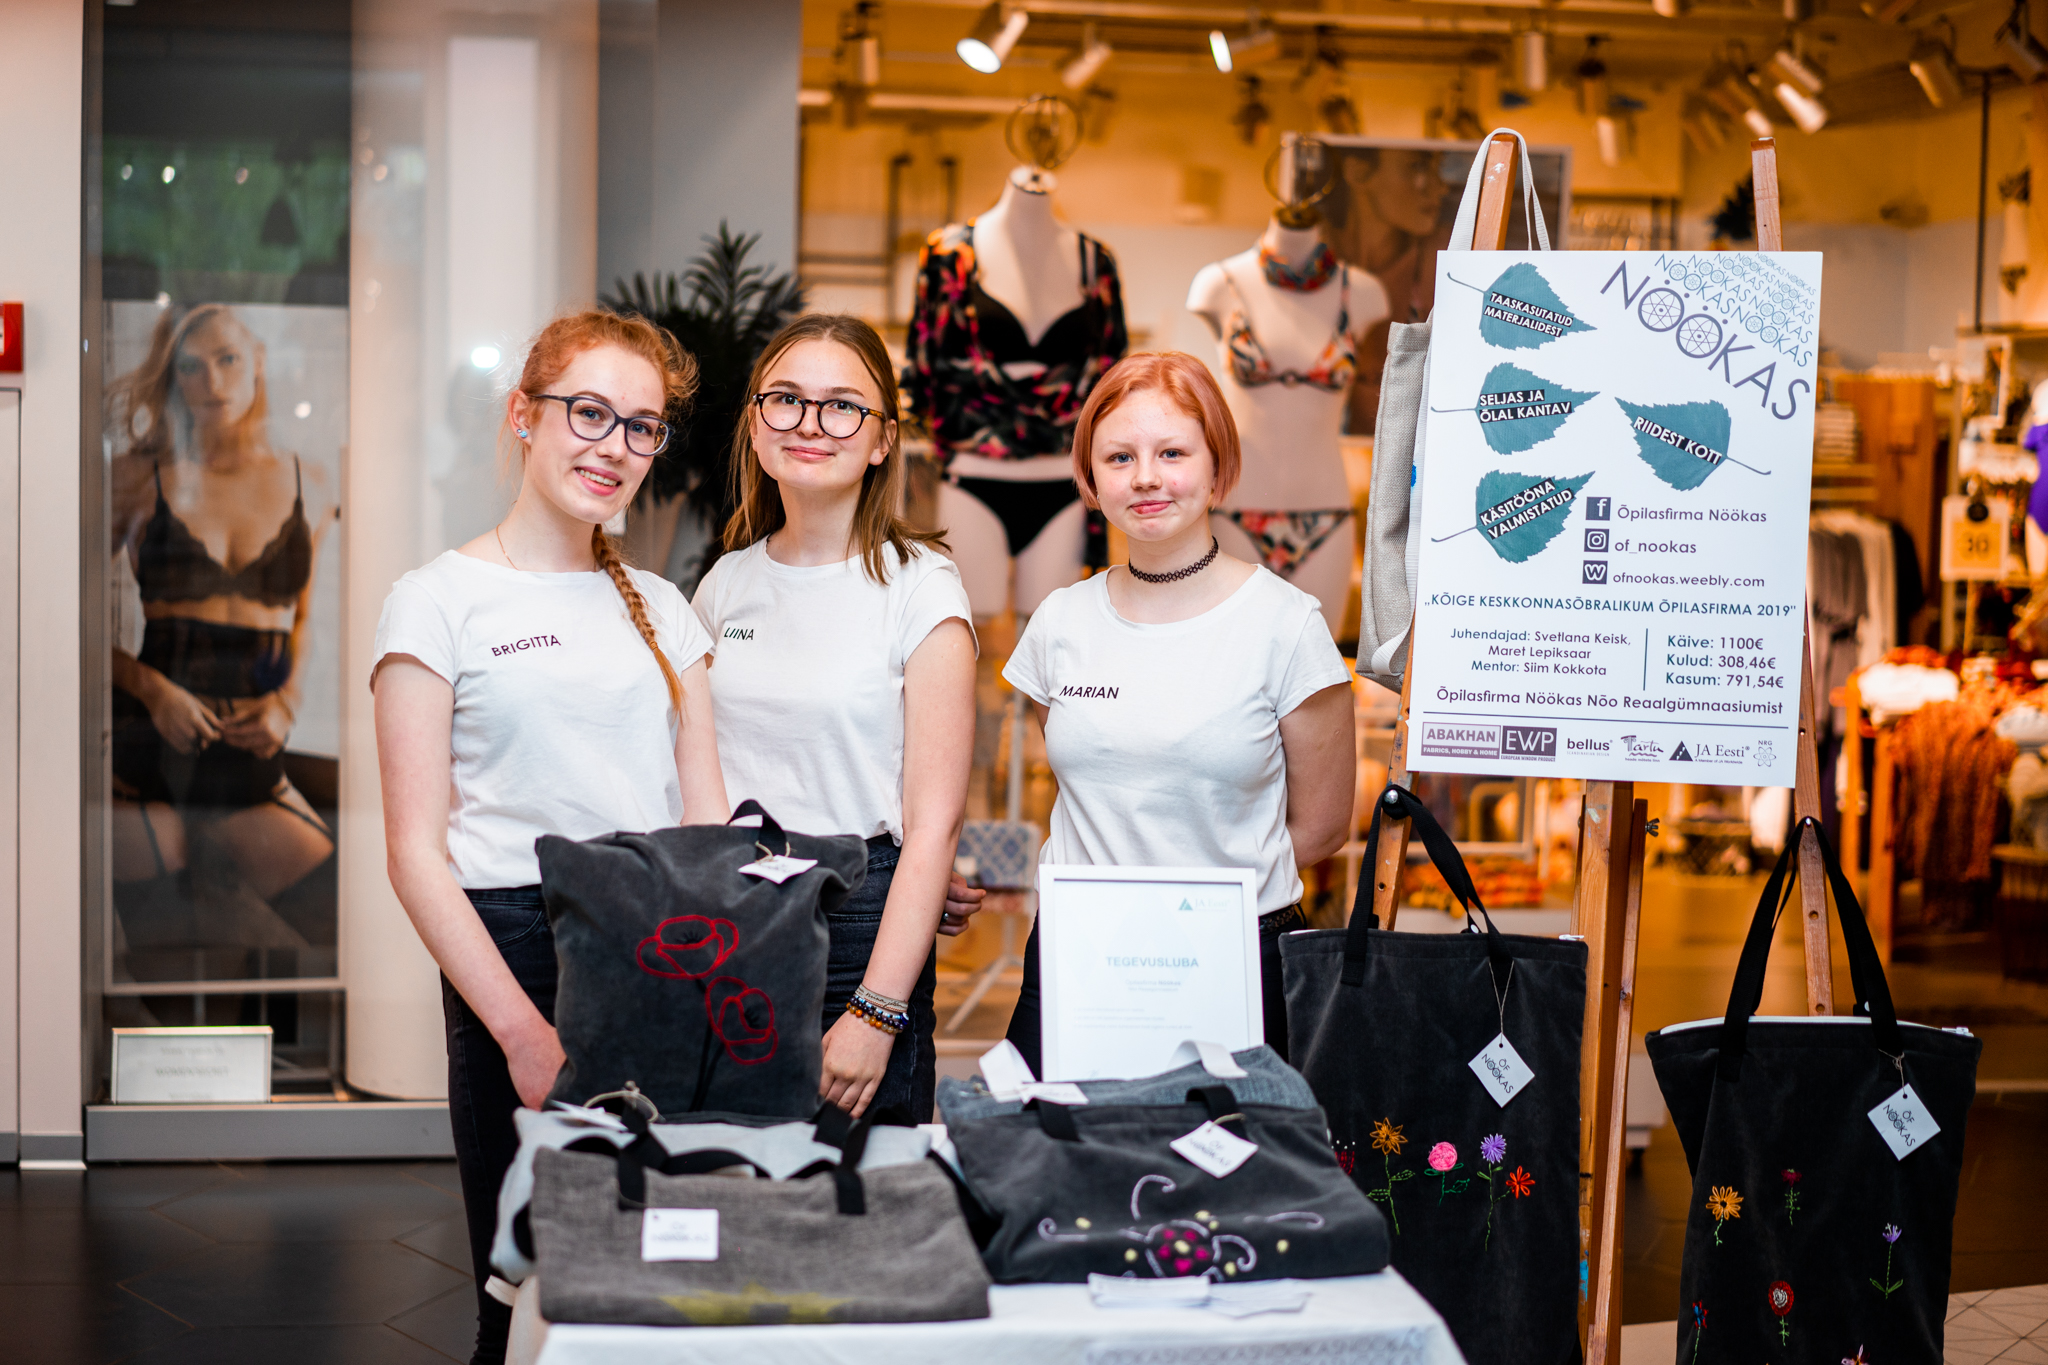 Ученические фирмы открыли в торговом центре Rocca al Mare поп-ап магазин